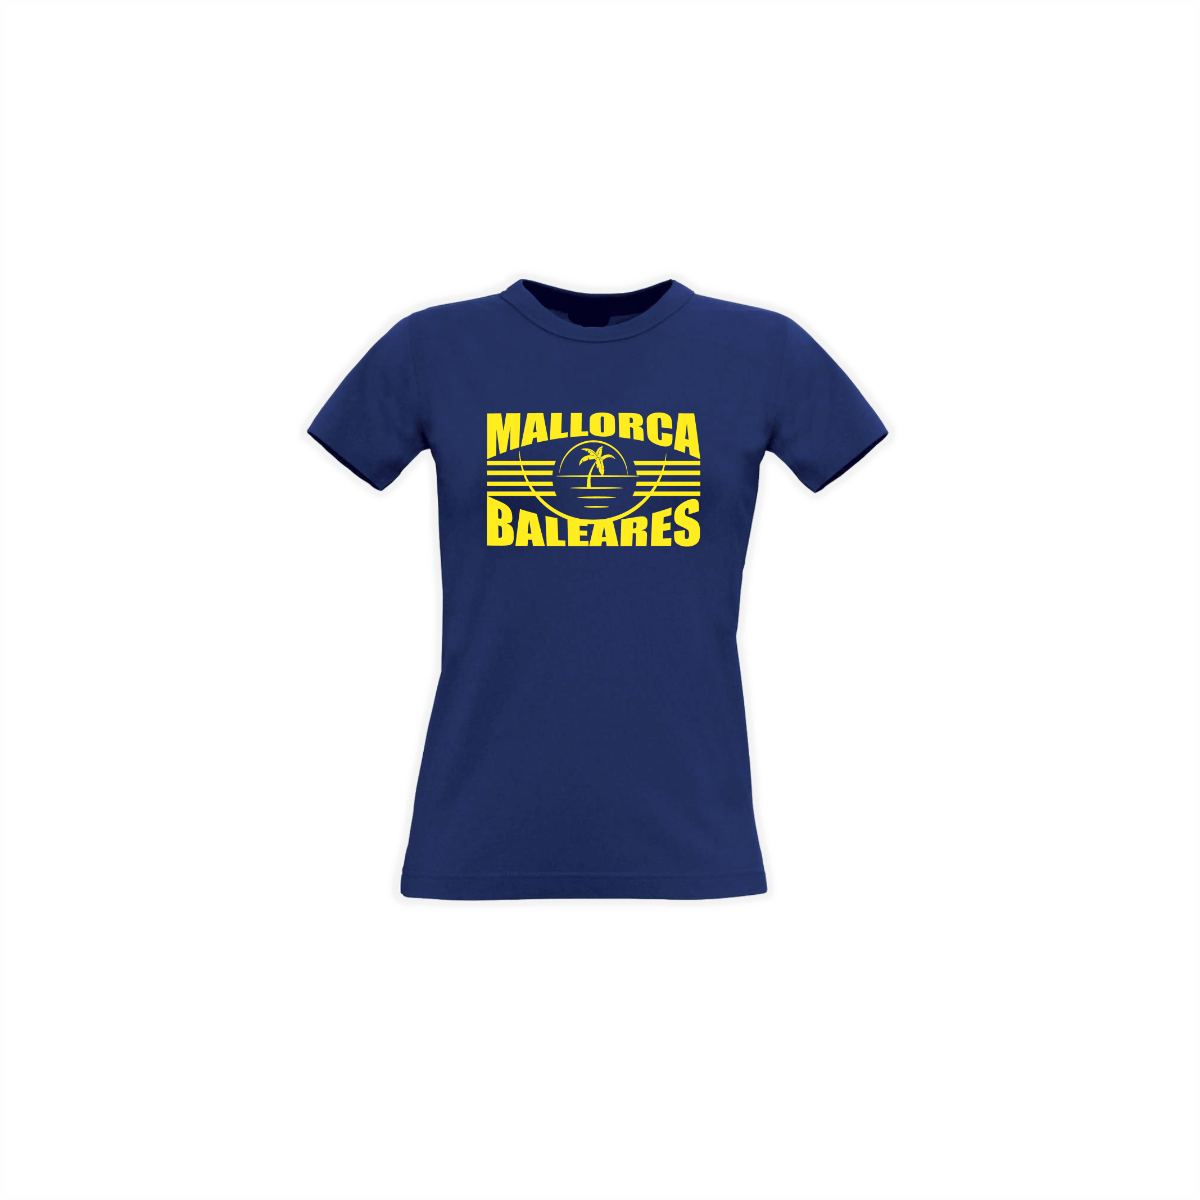 Girly-Shirt "MALLORCA BALEARES" dunkelblau